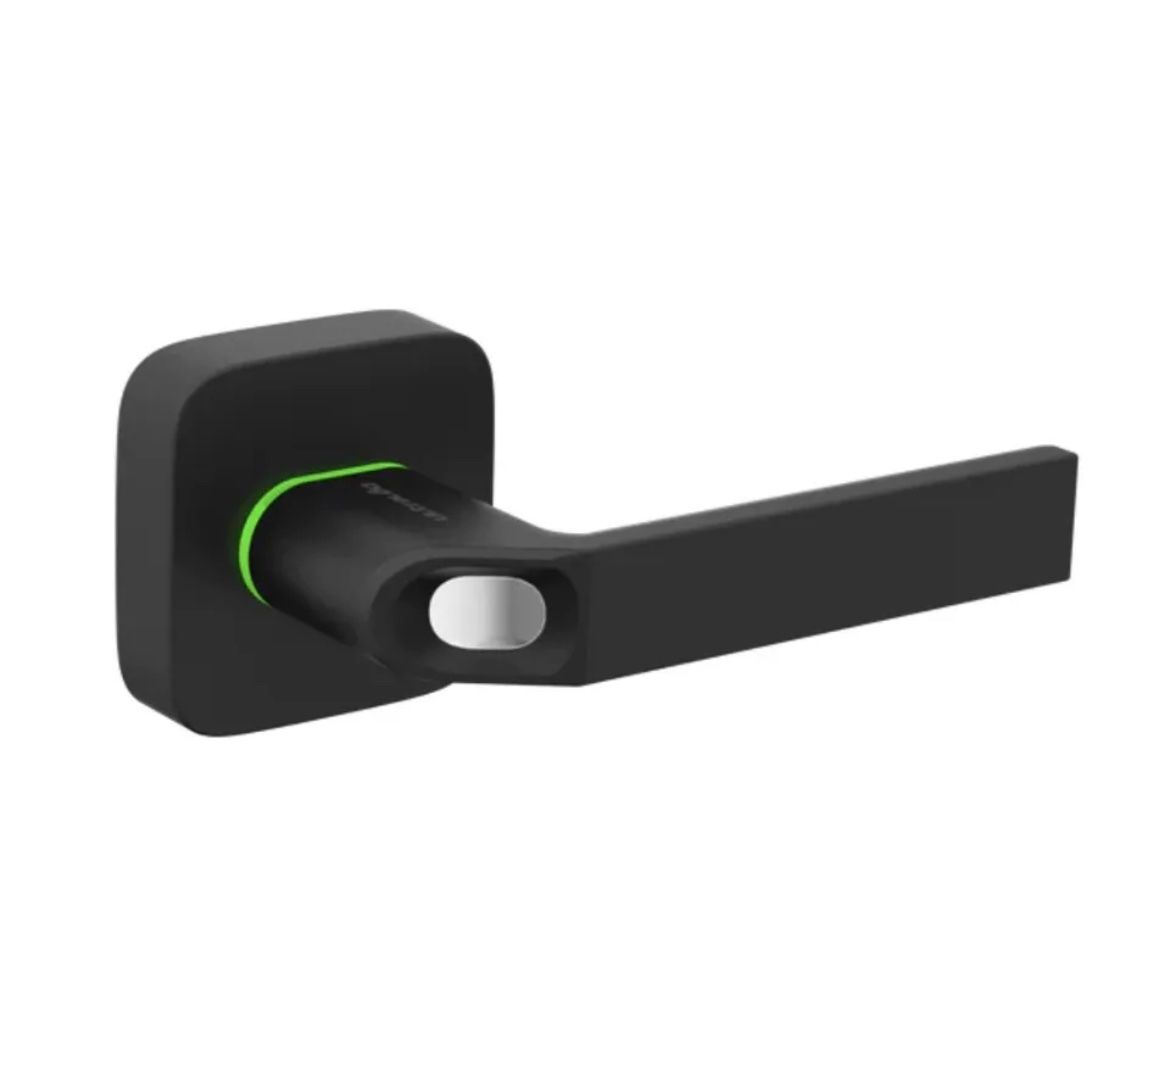 Ultraloq UL1 Bluetooth Enabled Fingerprint And Key Fob Smart Lock, BLACK NIB